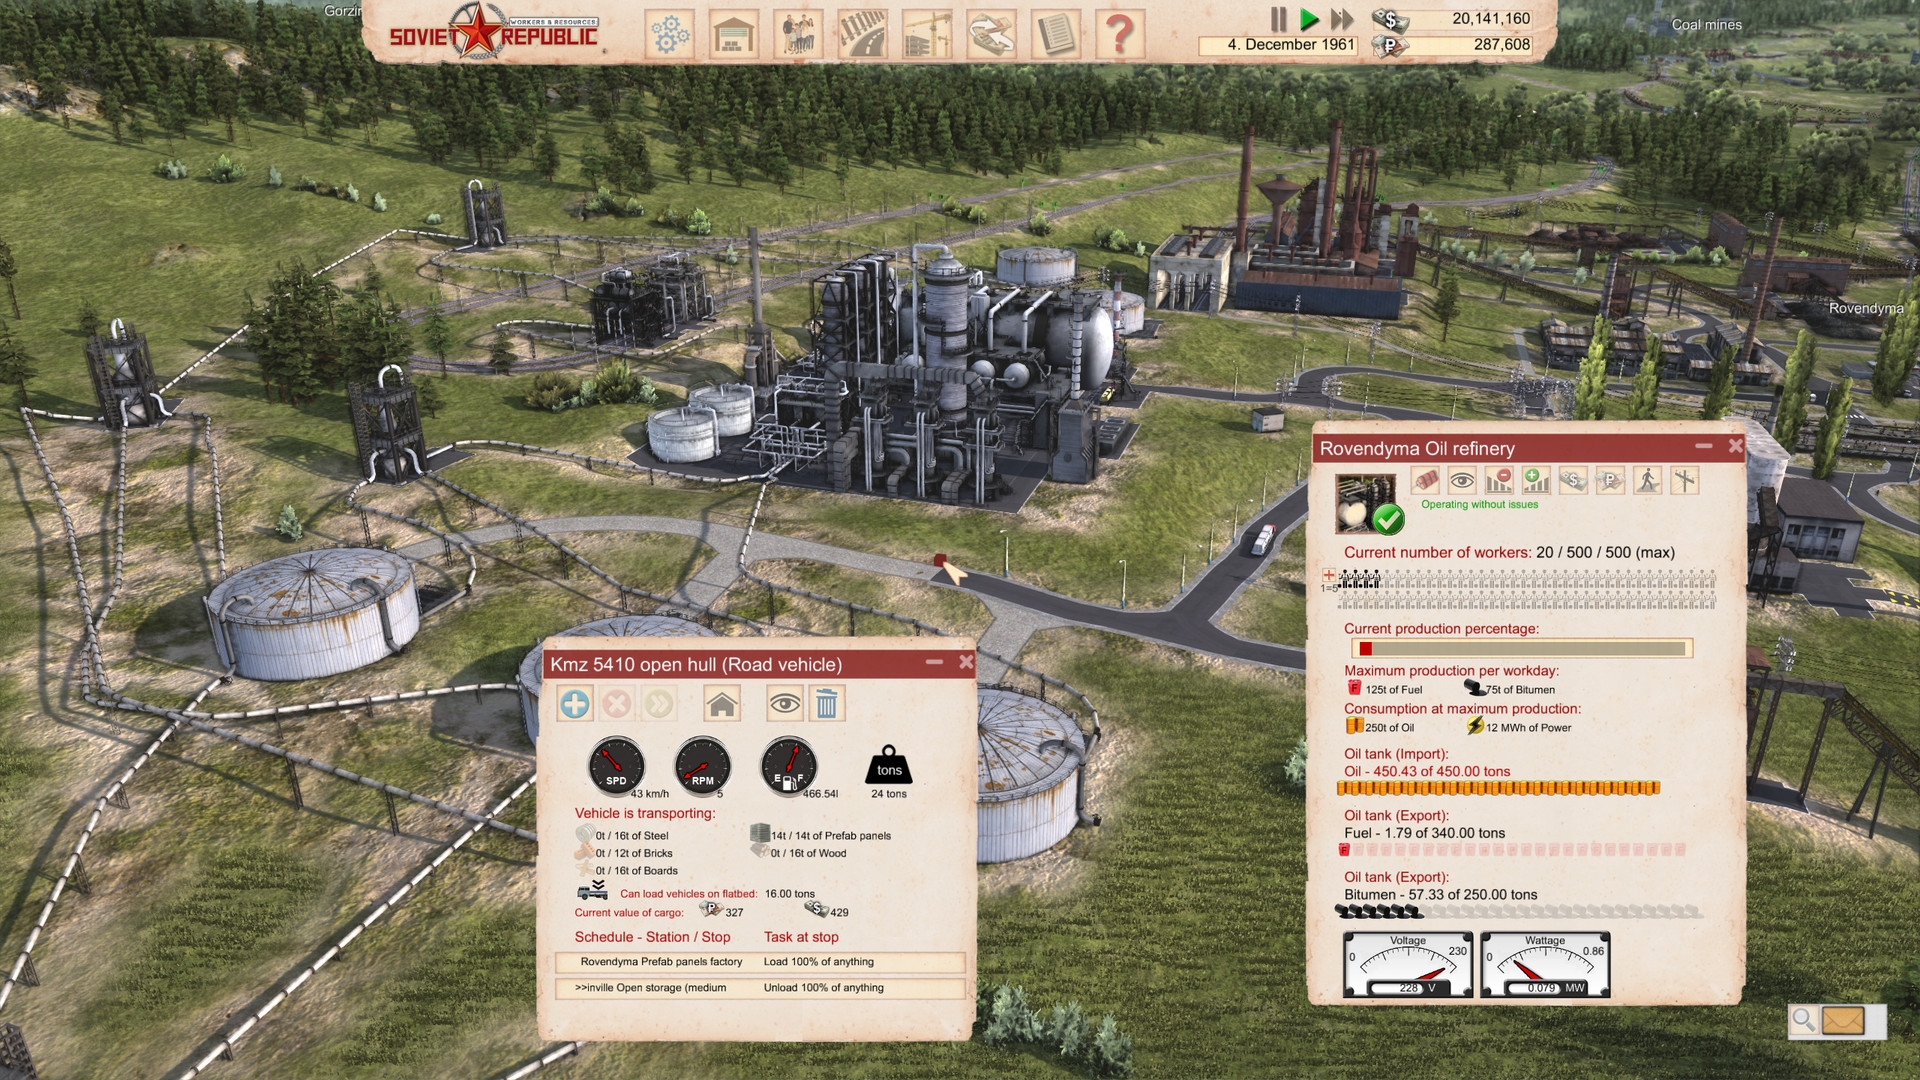 Скриншот из игры Workers & Resources: Soviet Republic под номером 14